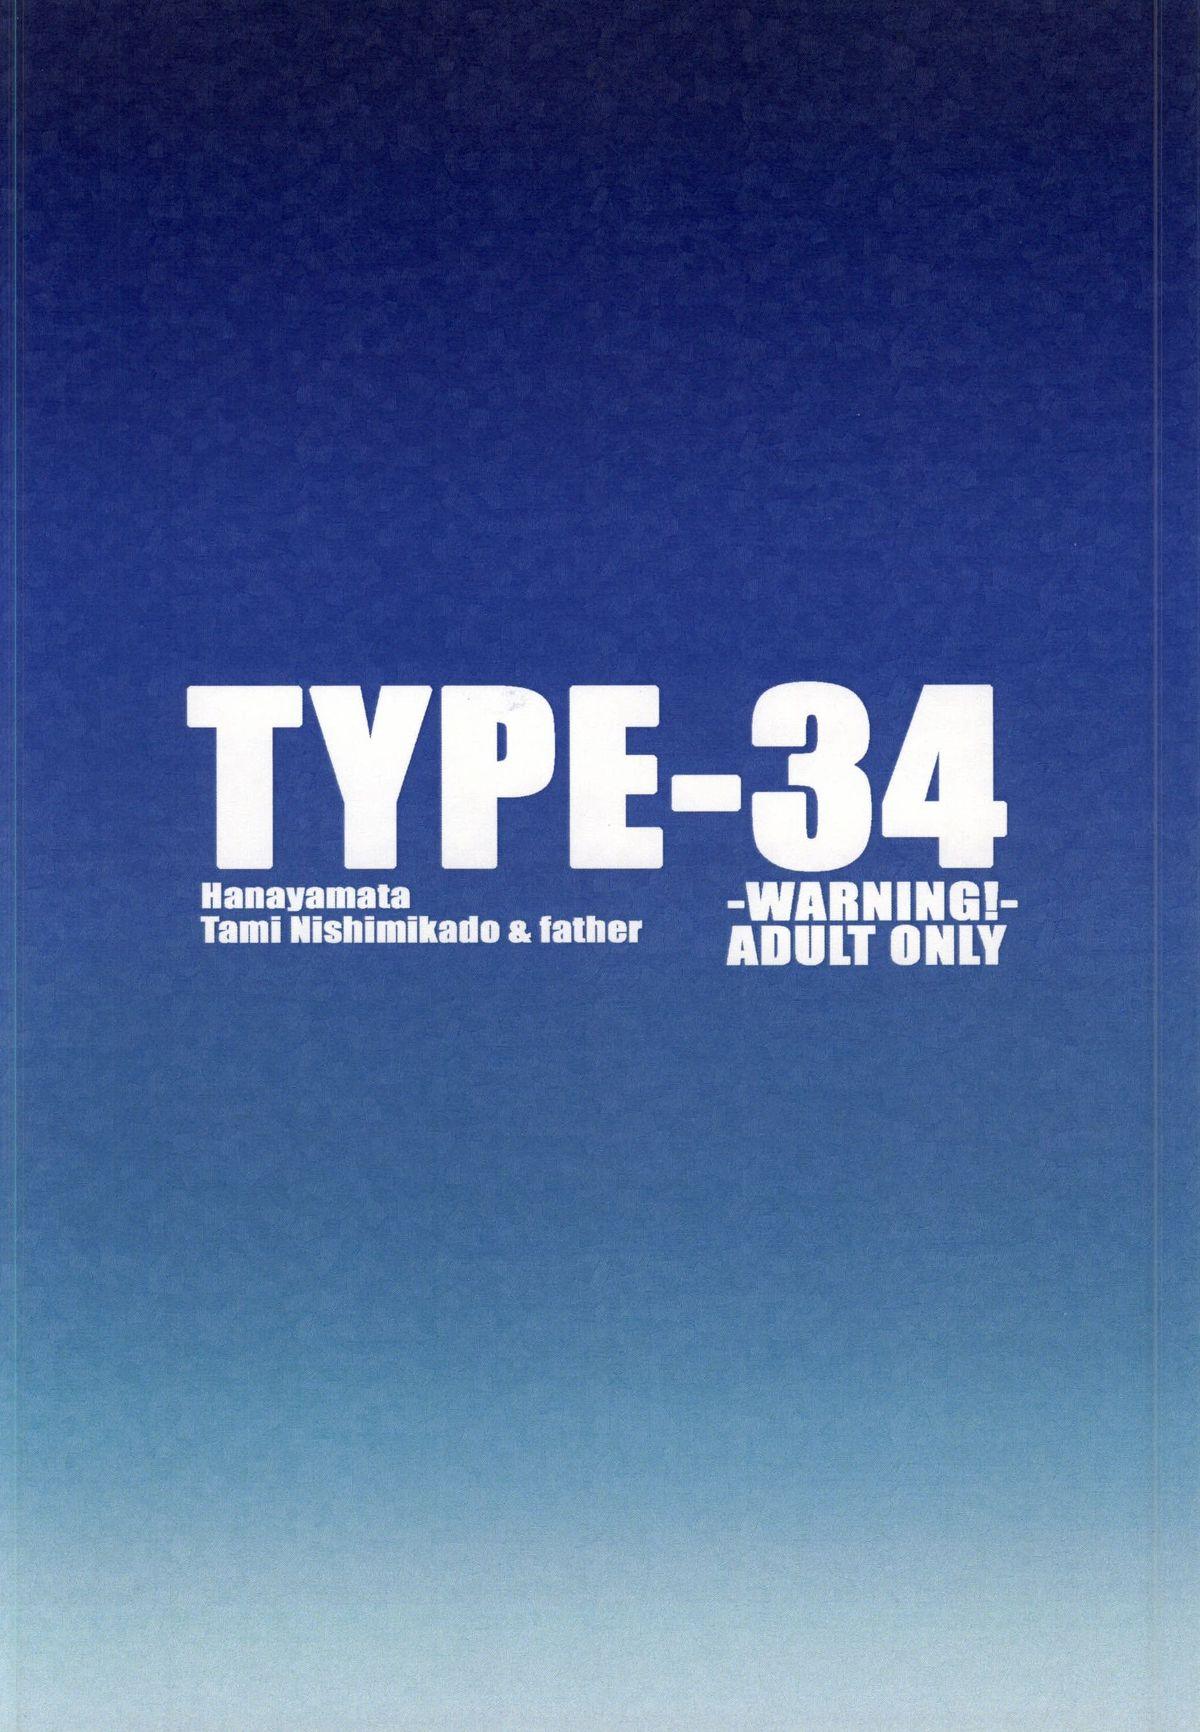 TYPE-34 21